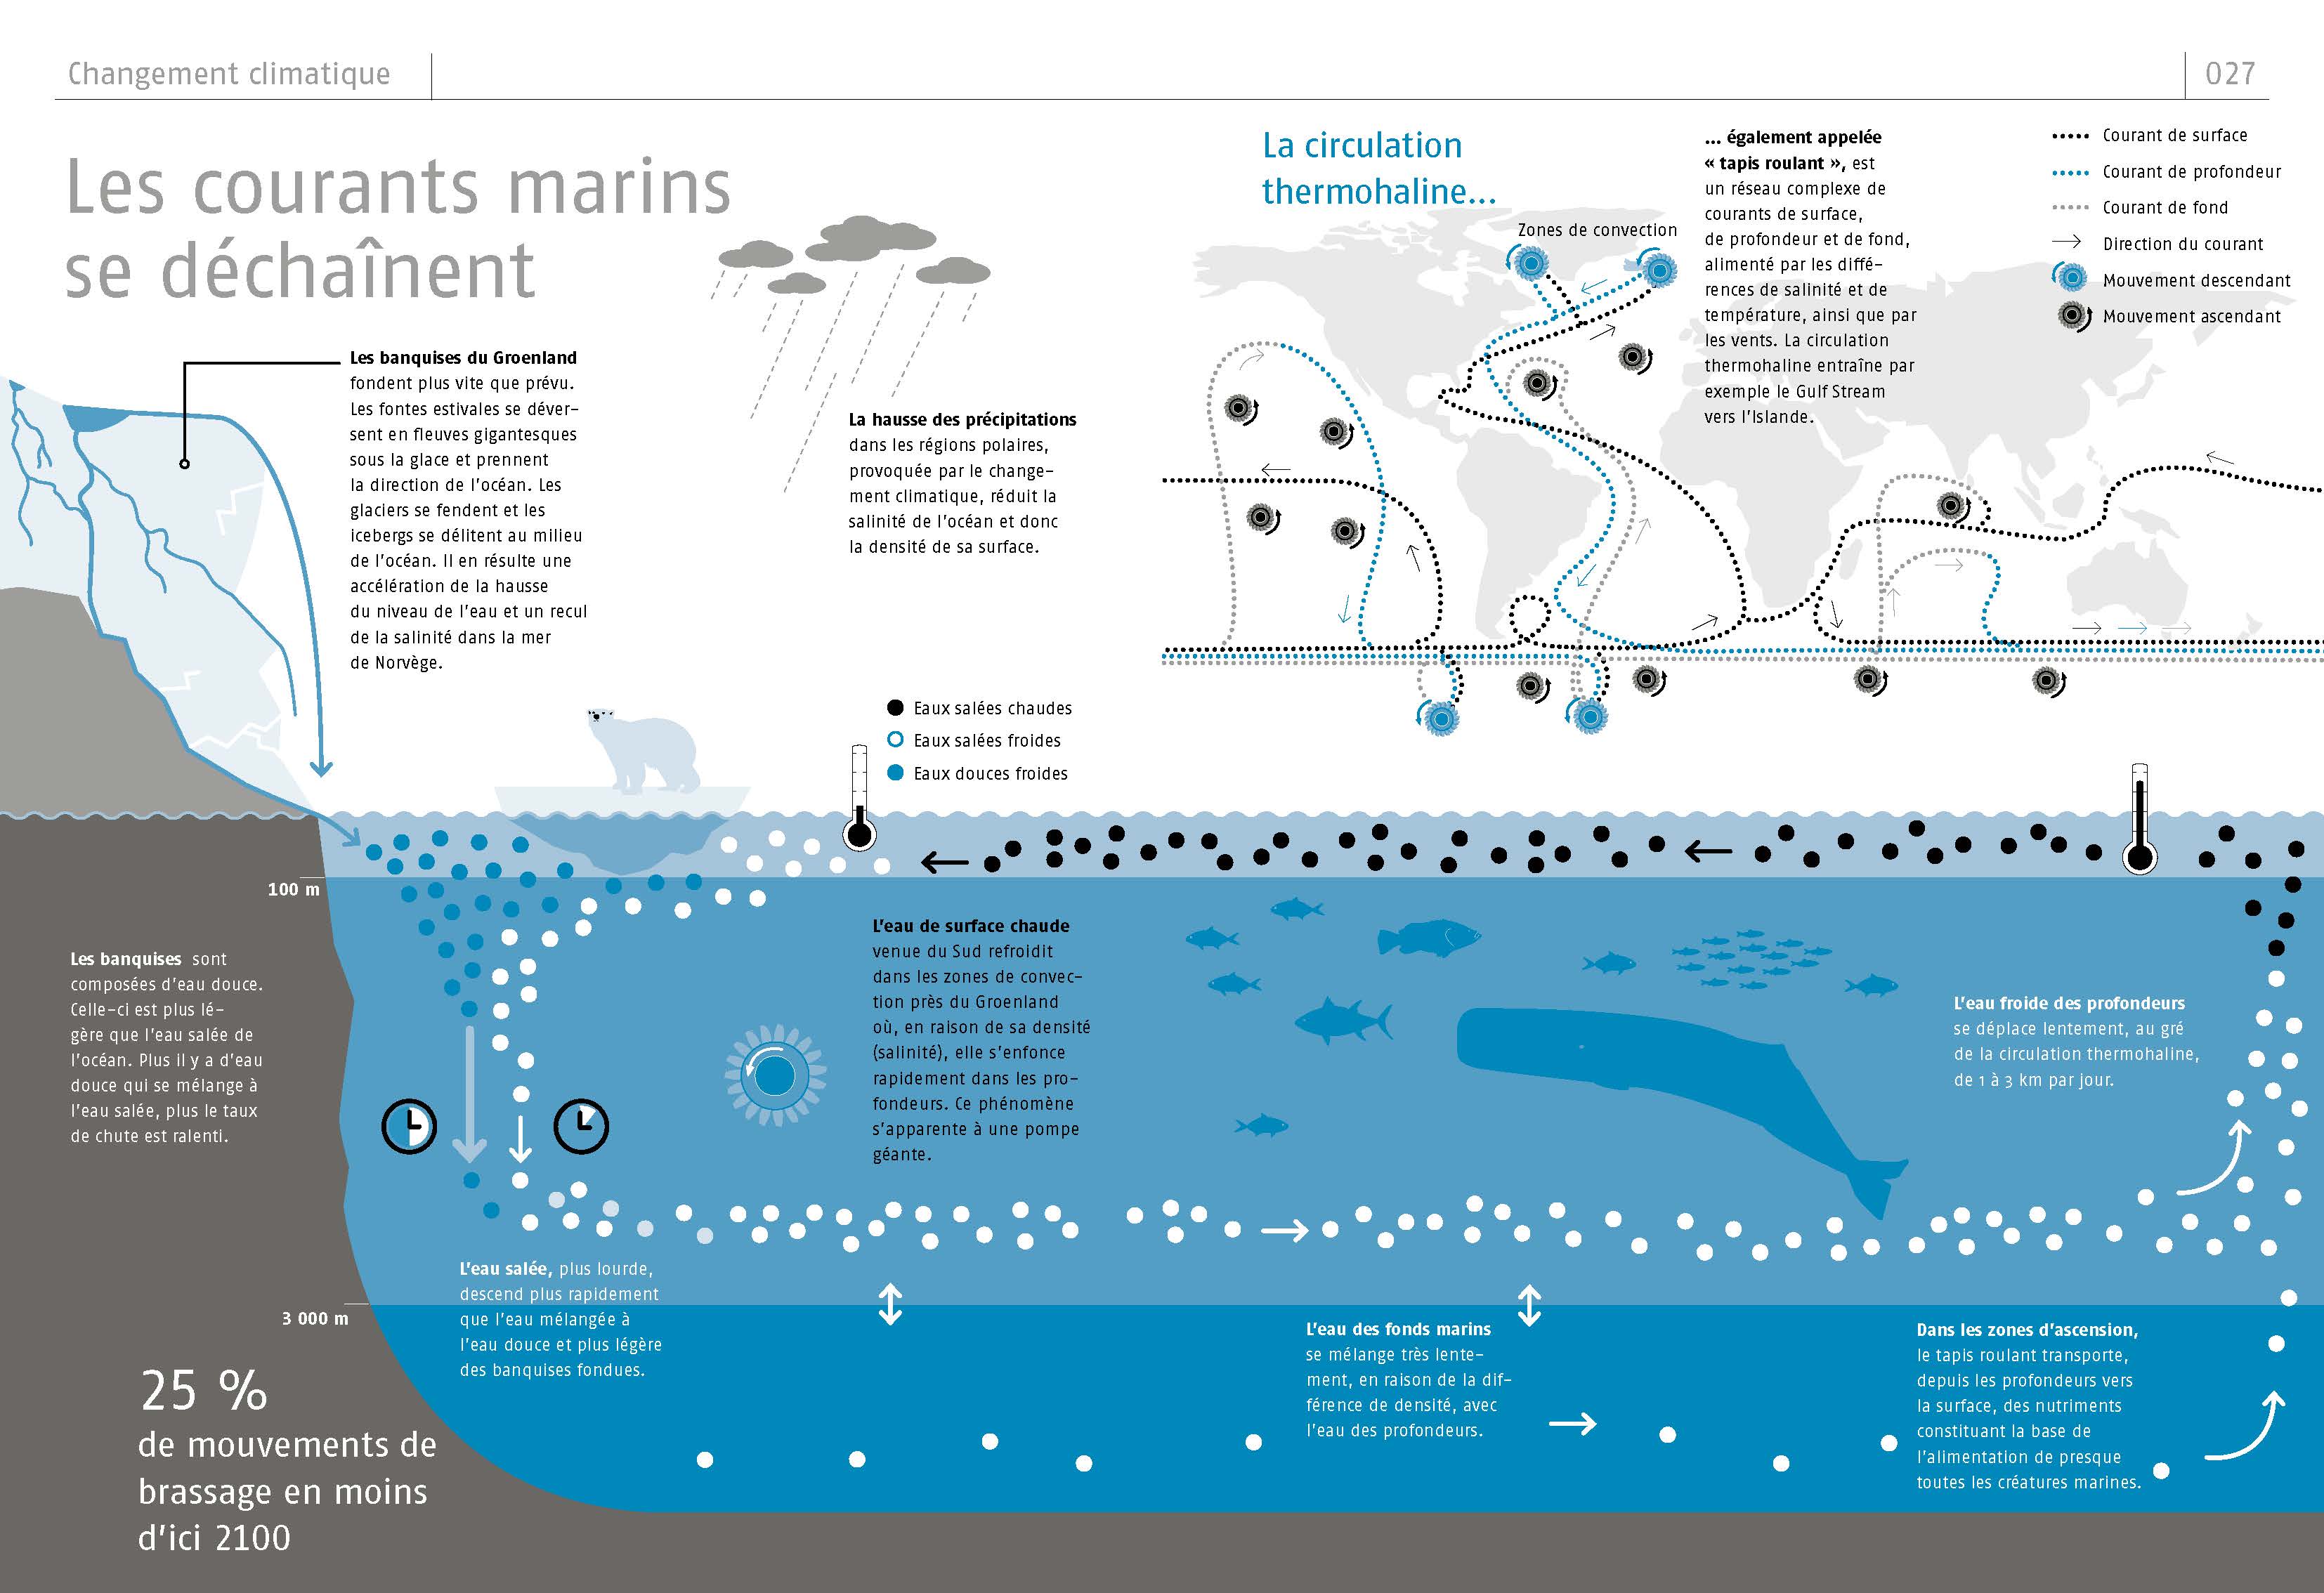 Le Livre Des Oceans : Tout Ce Que Vous Devez Savoir En 50 Infographies